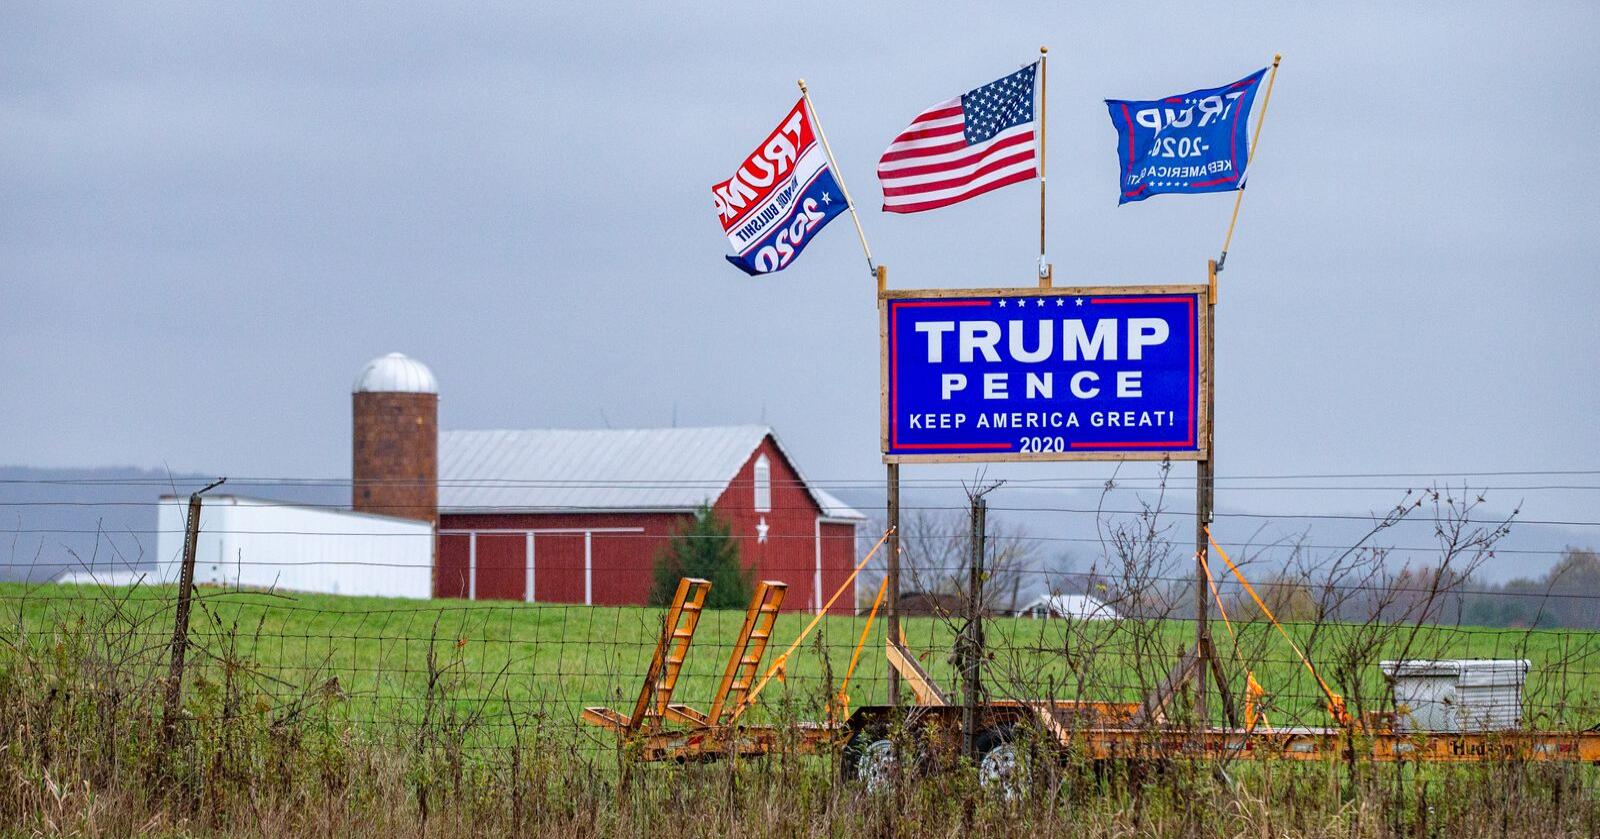 Et Trump/Pence skilt satt opp på en gård i USA i forkant av valget i 2020. (Foto: Paul Weaver/Sipa USA)